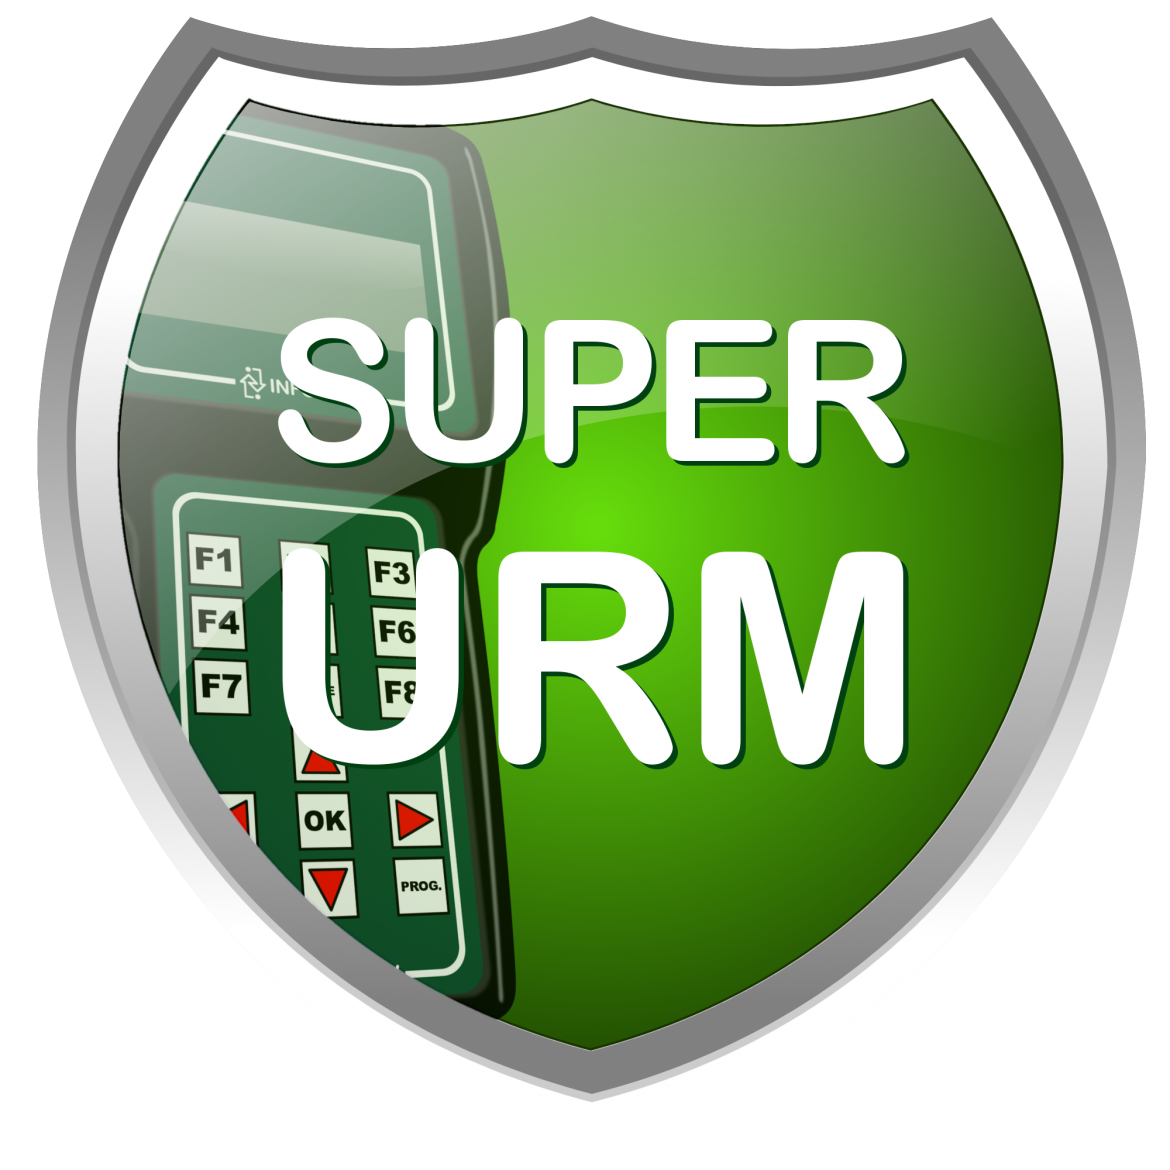 [Software -Super URM]